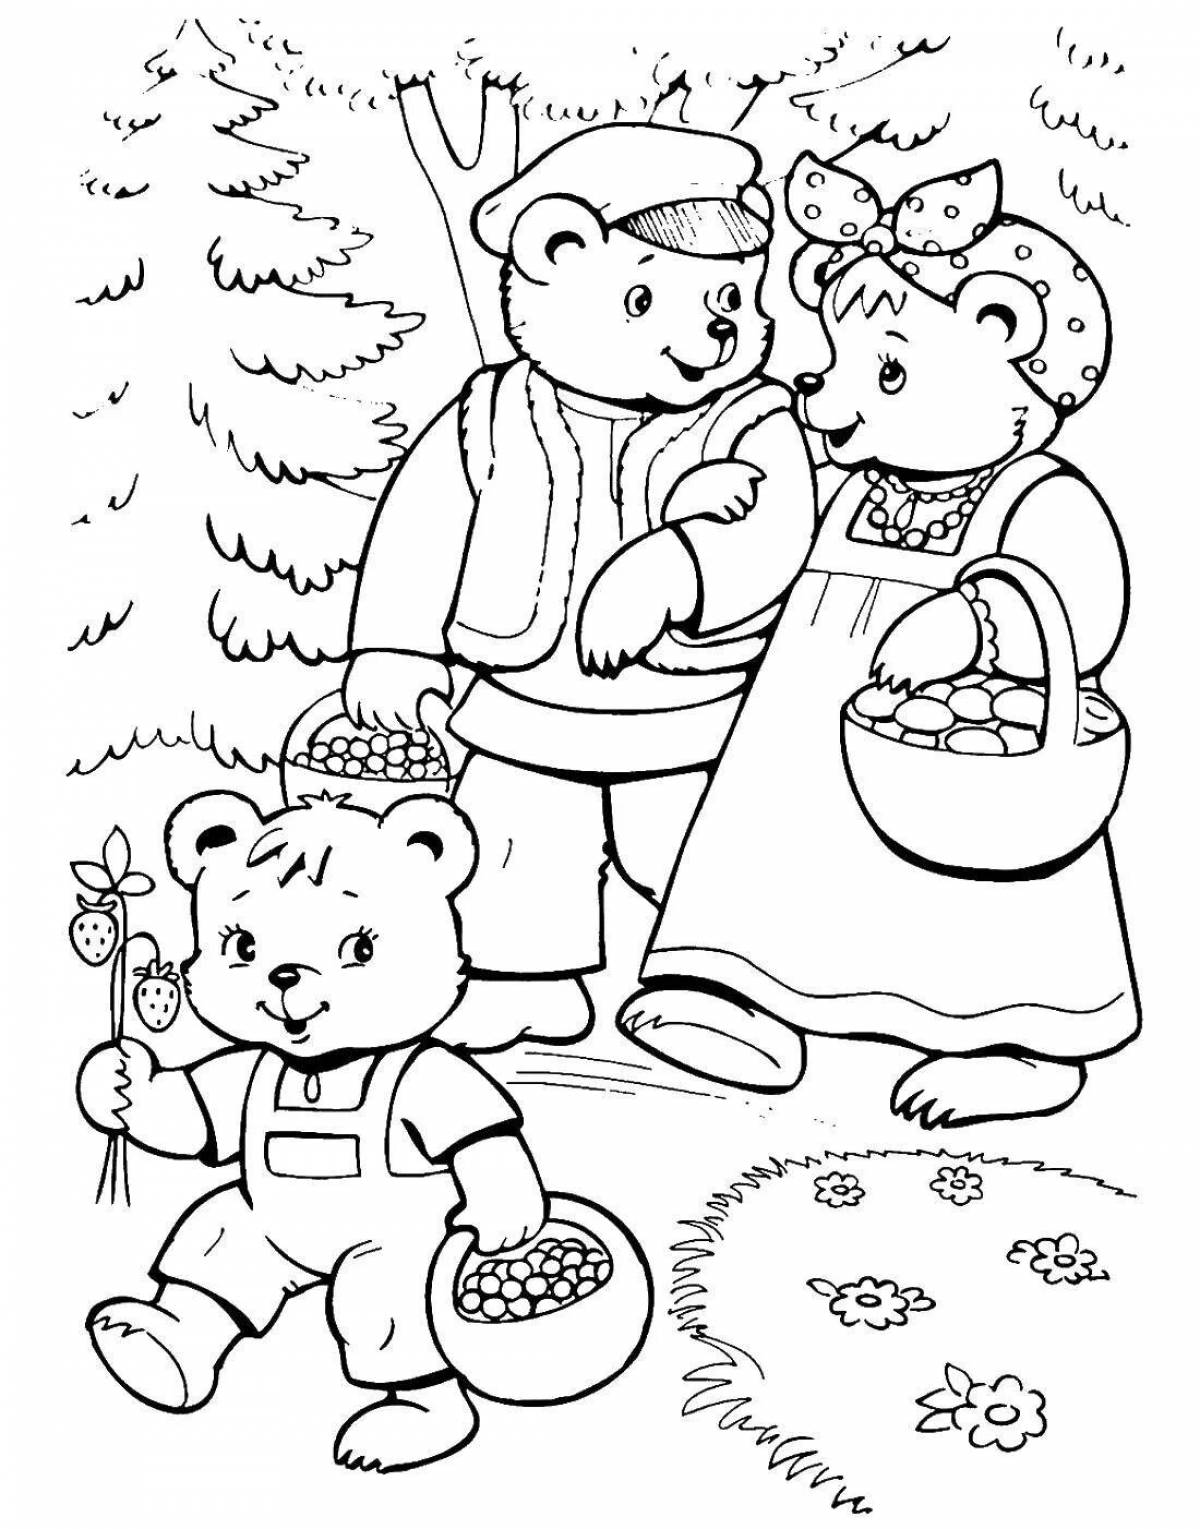 Детские рисунки к сказке пушкина о медведихе